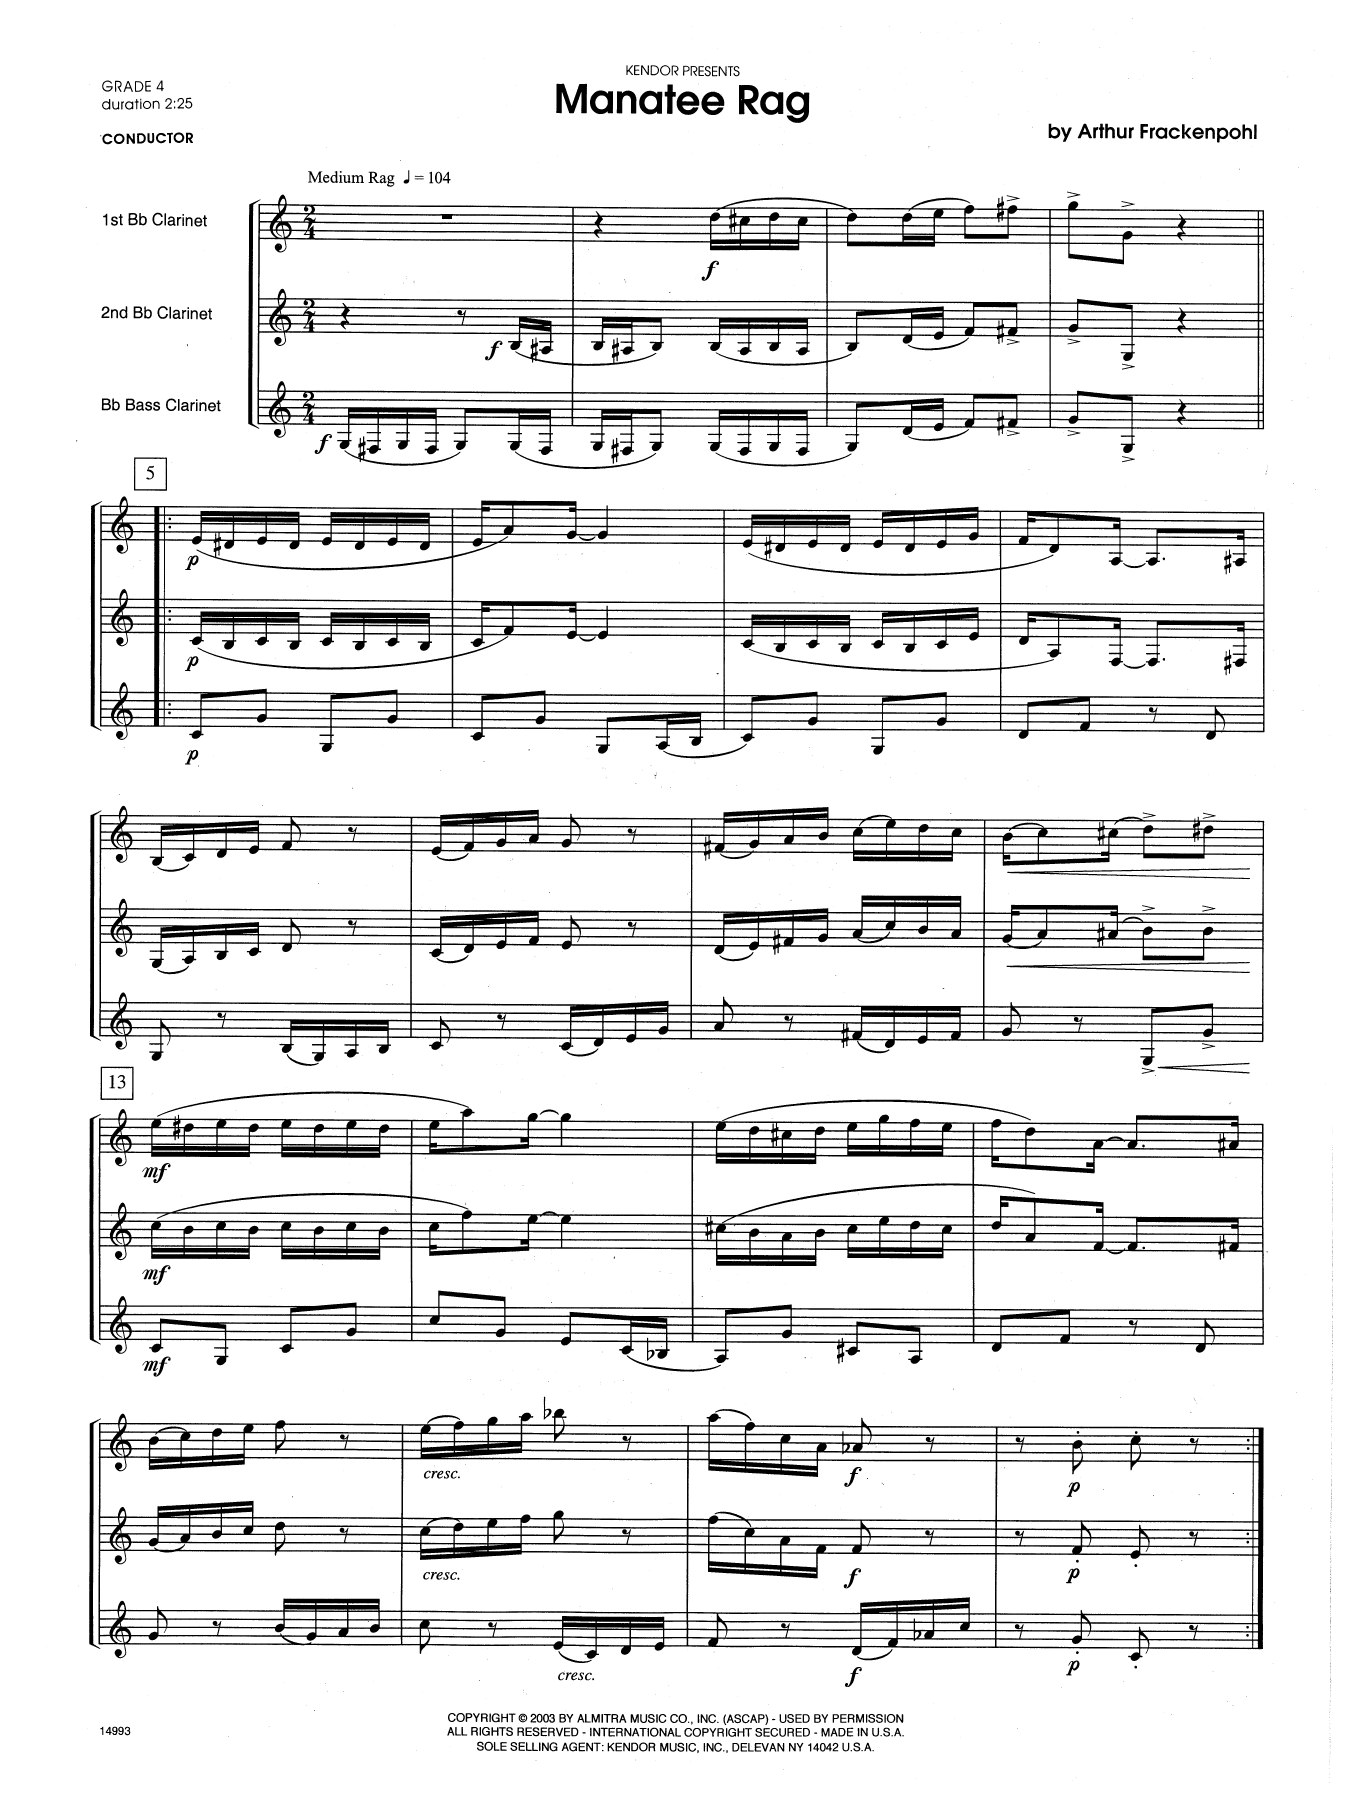 Download Arthur Frackenpohl Manatee Rag - Full Score Sheet Music